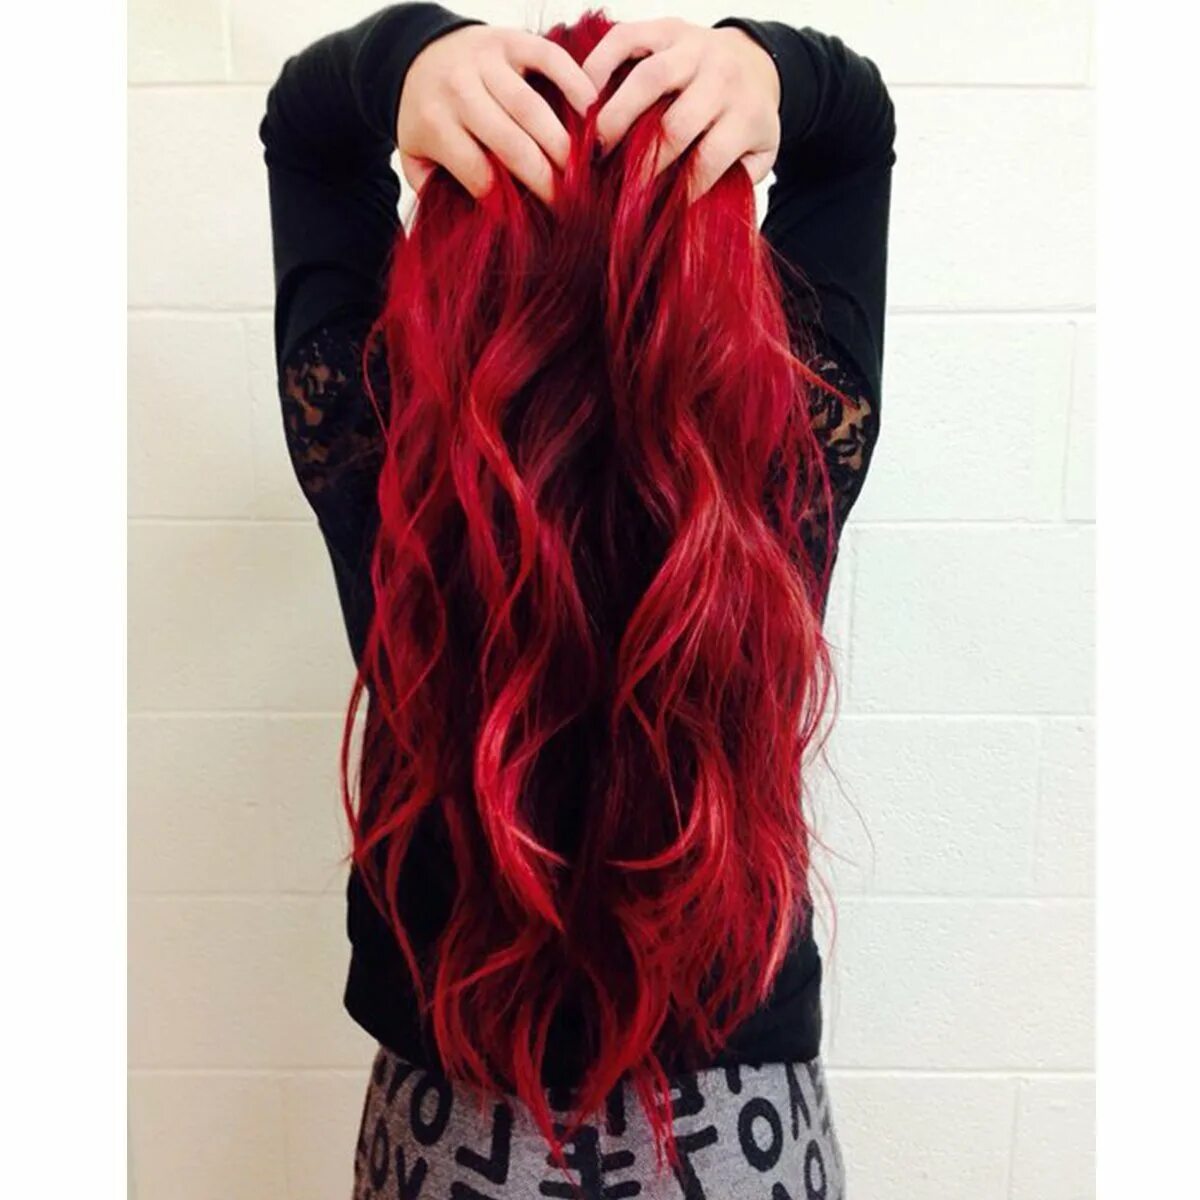 Черно красные волосы длинные. Черно красные волосы. Девушка с красными волосами. Красный цвет волос у девушек. Красные волосы со спины.